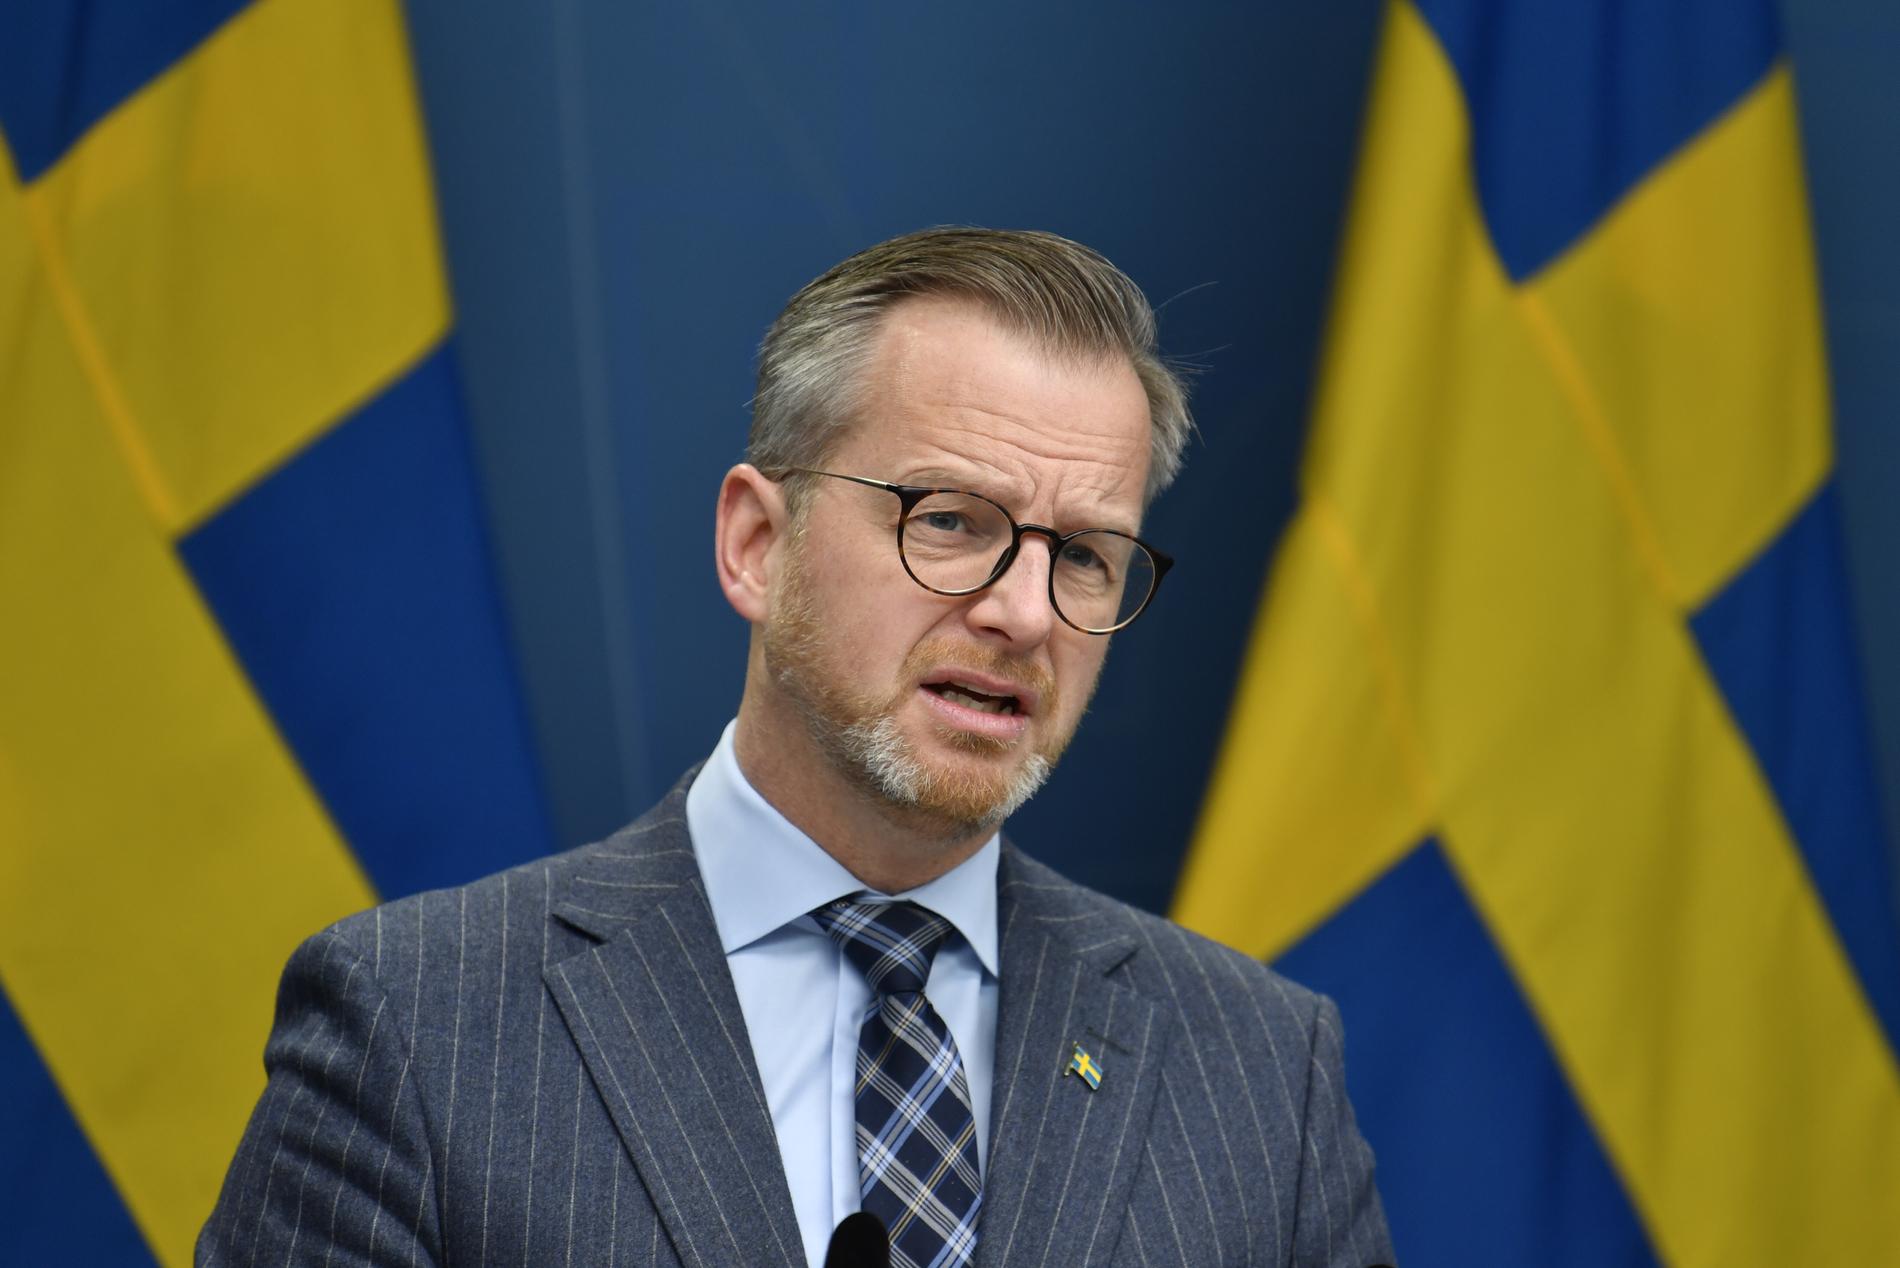 Inrikesminister Mikael Damberg sade att Sverige ska göra samma sak. Men i dag, måndag, landar fortfarande plan från Storbritannien. 